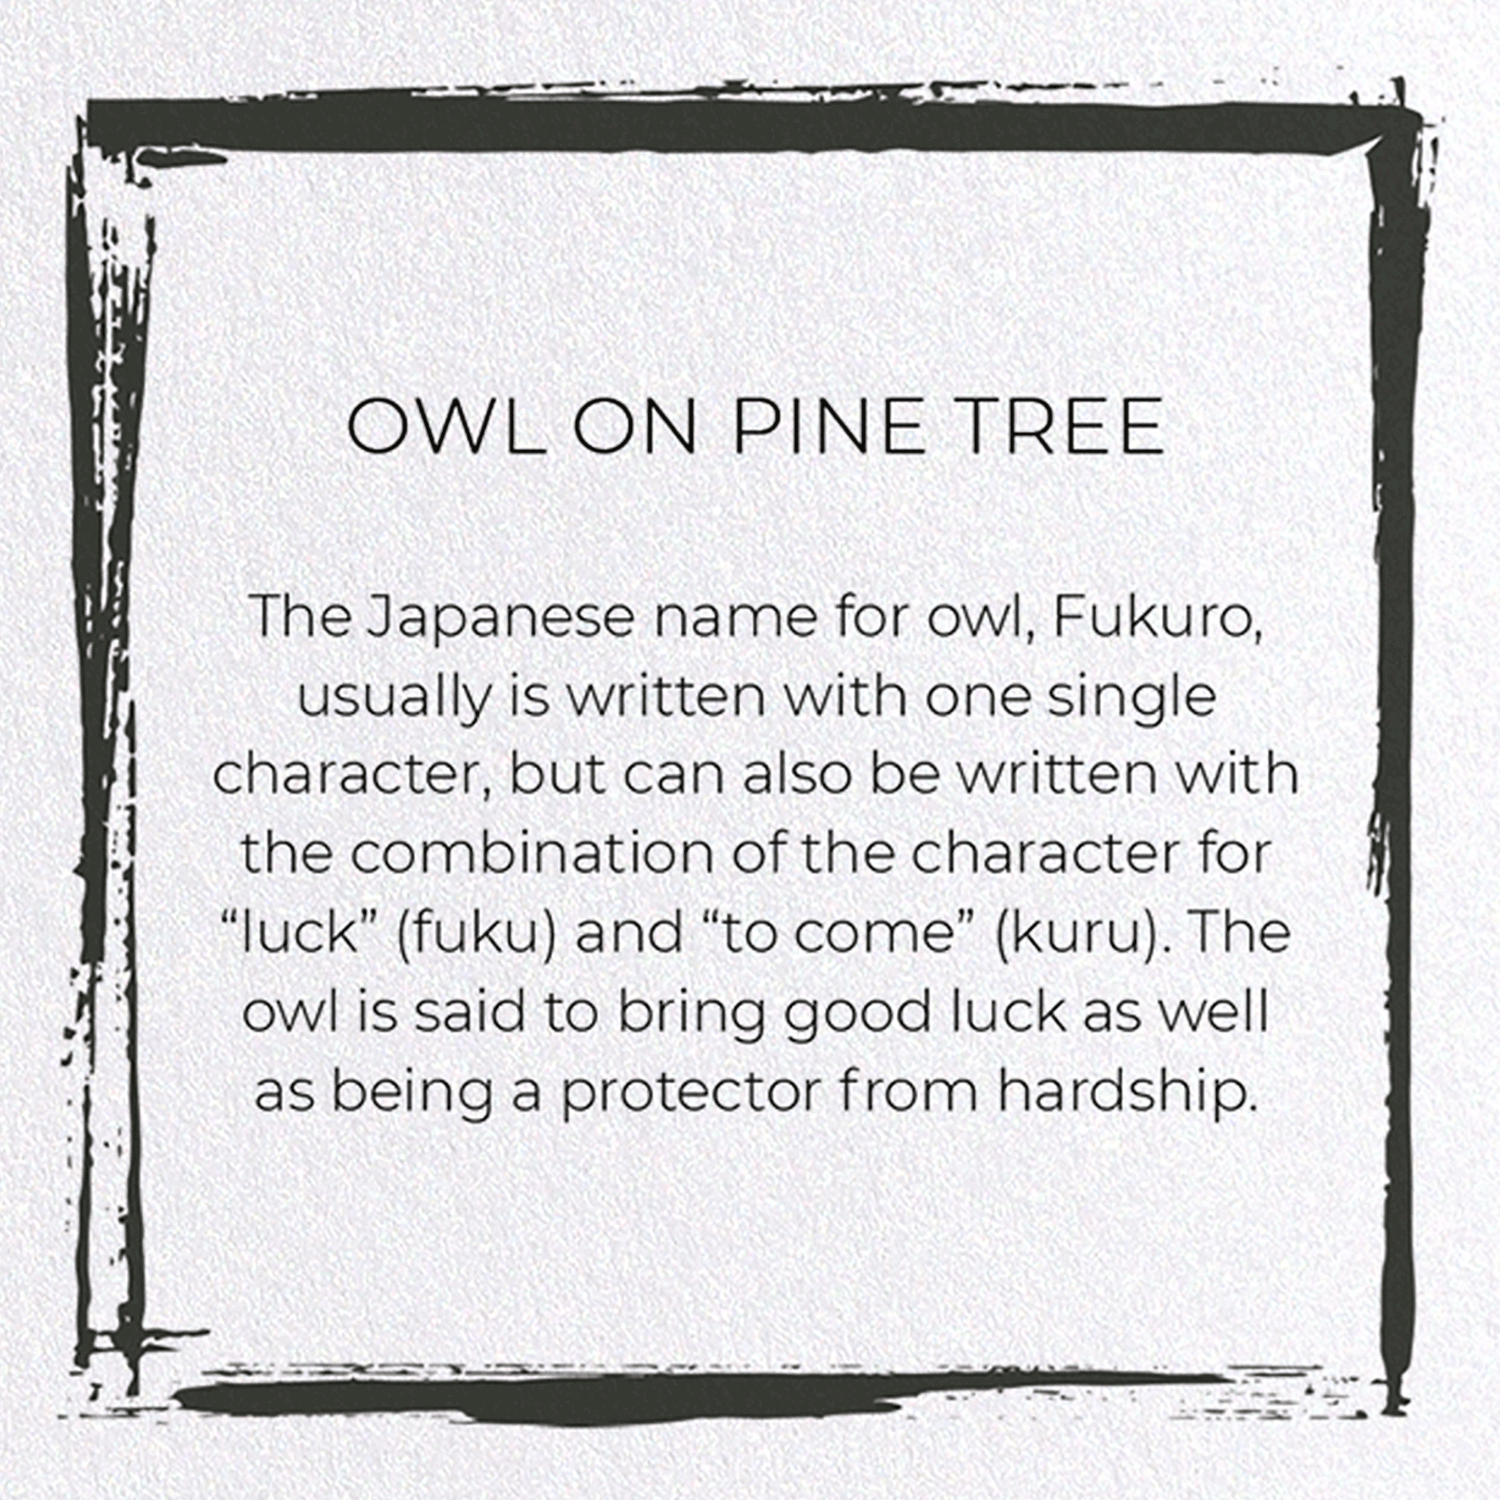 OWL ON PINE TREE